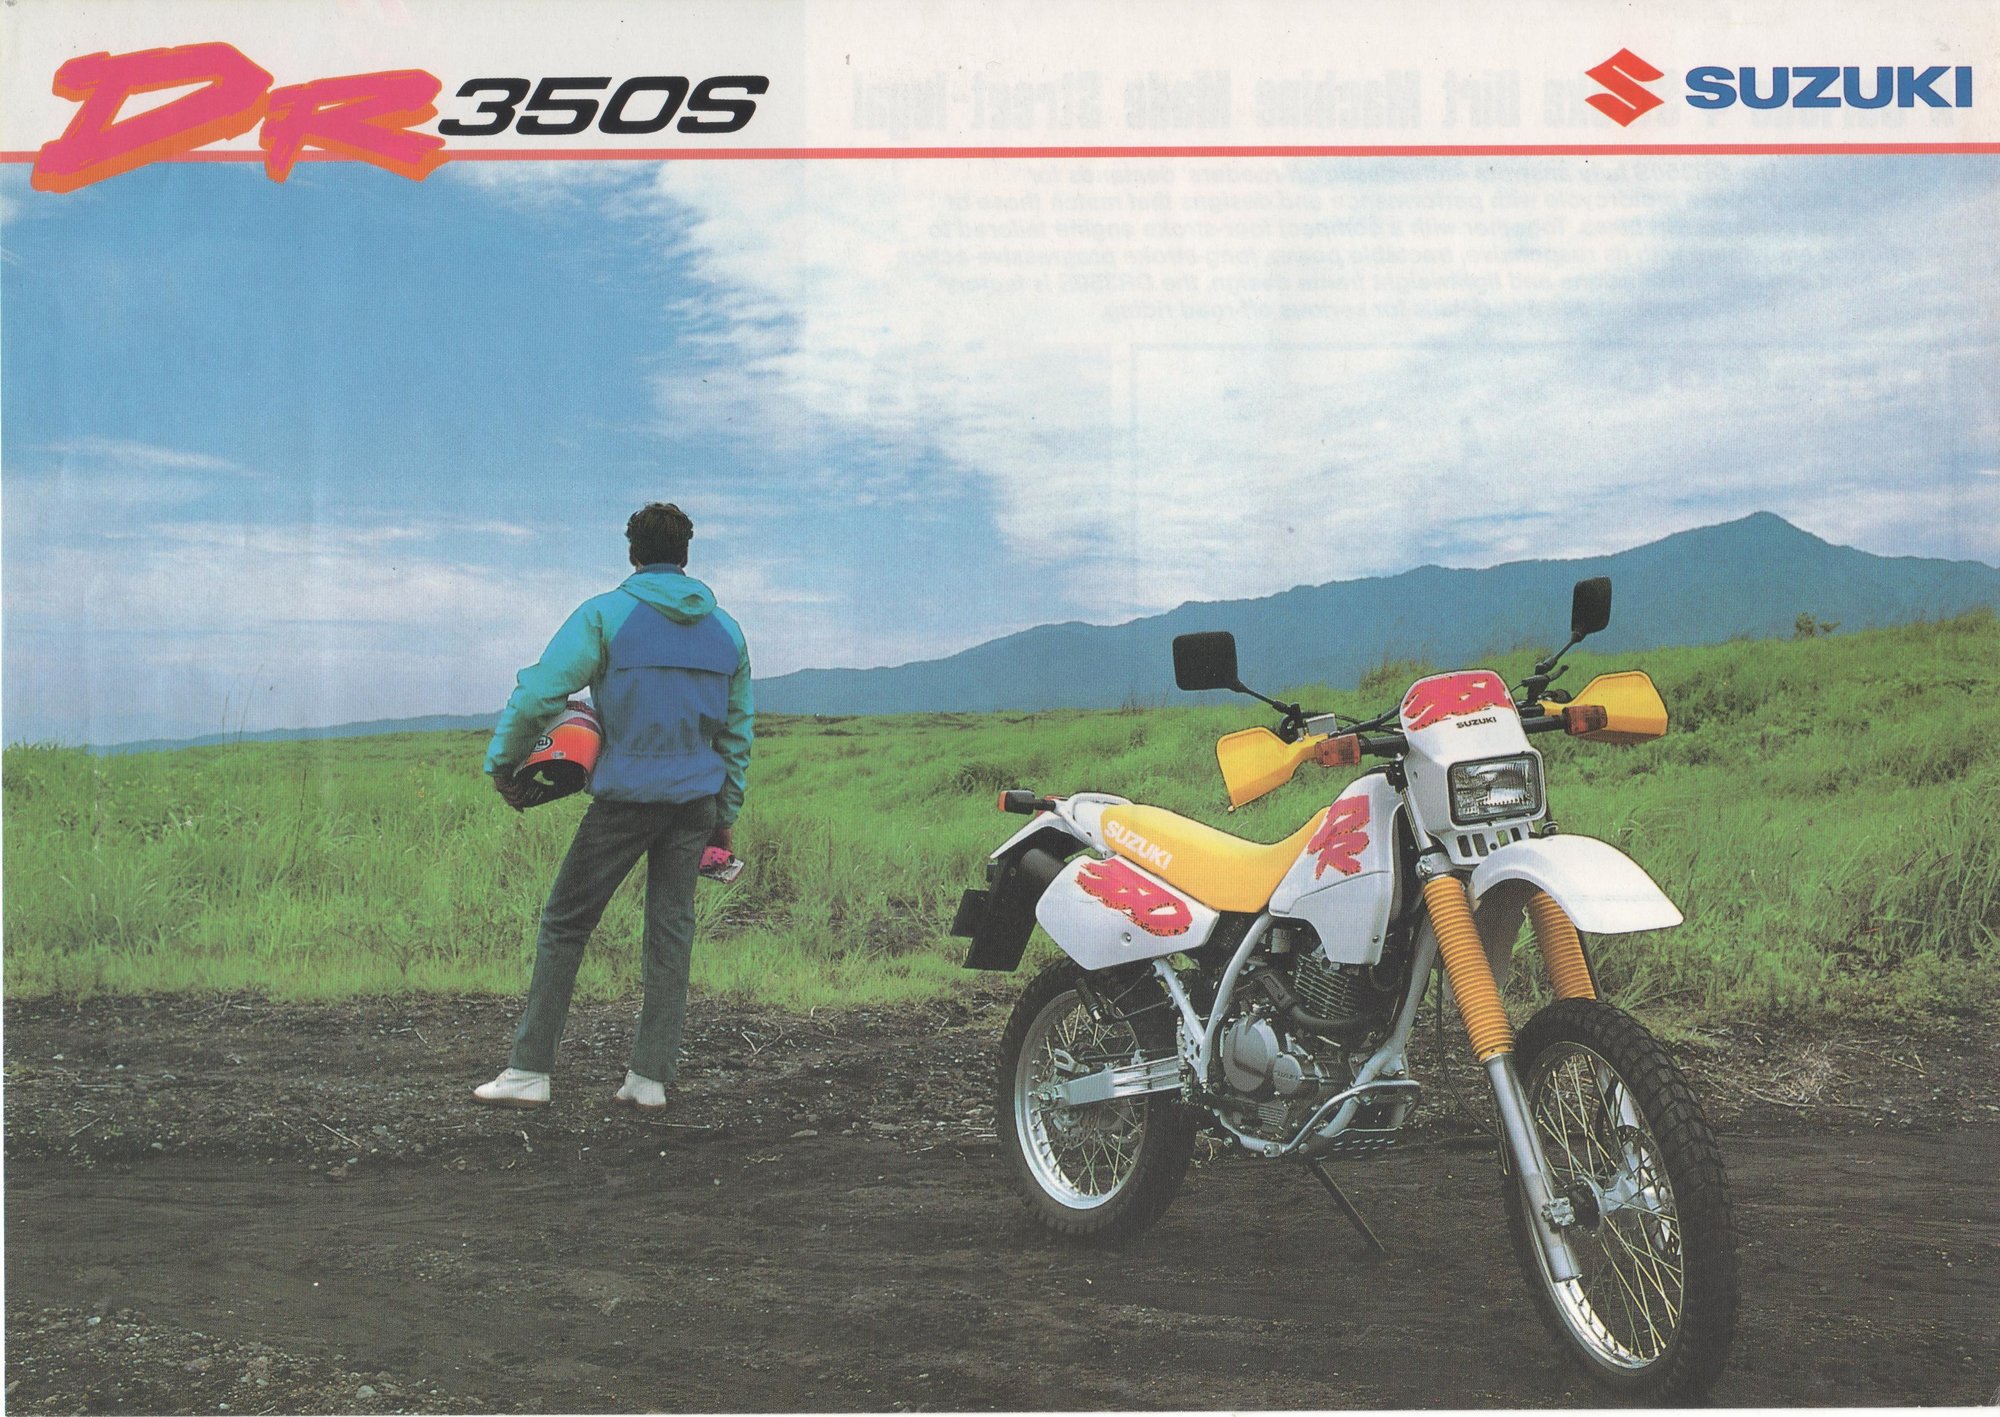 1993 Suzuki DR350S brochure.